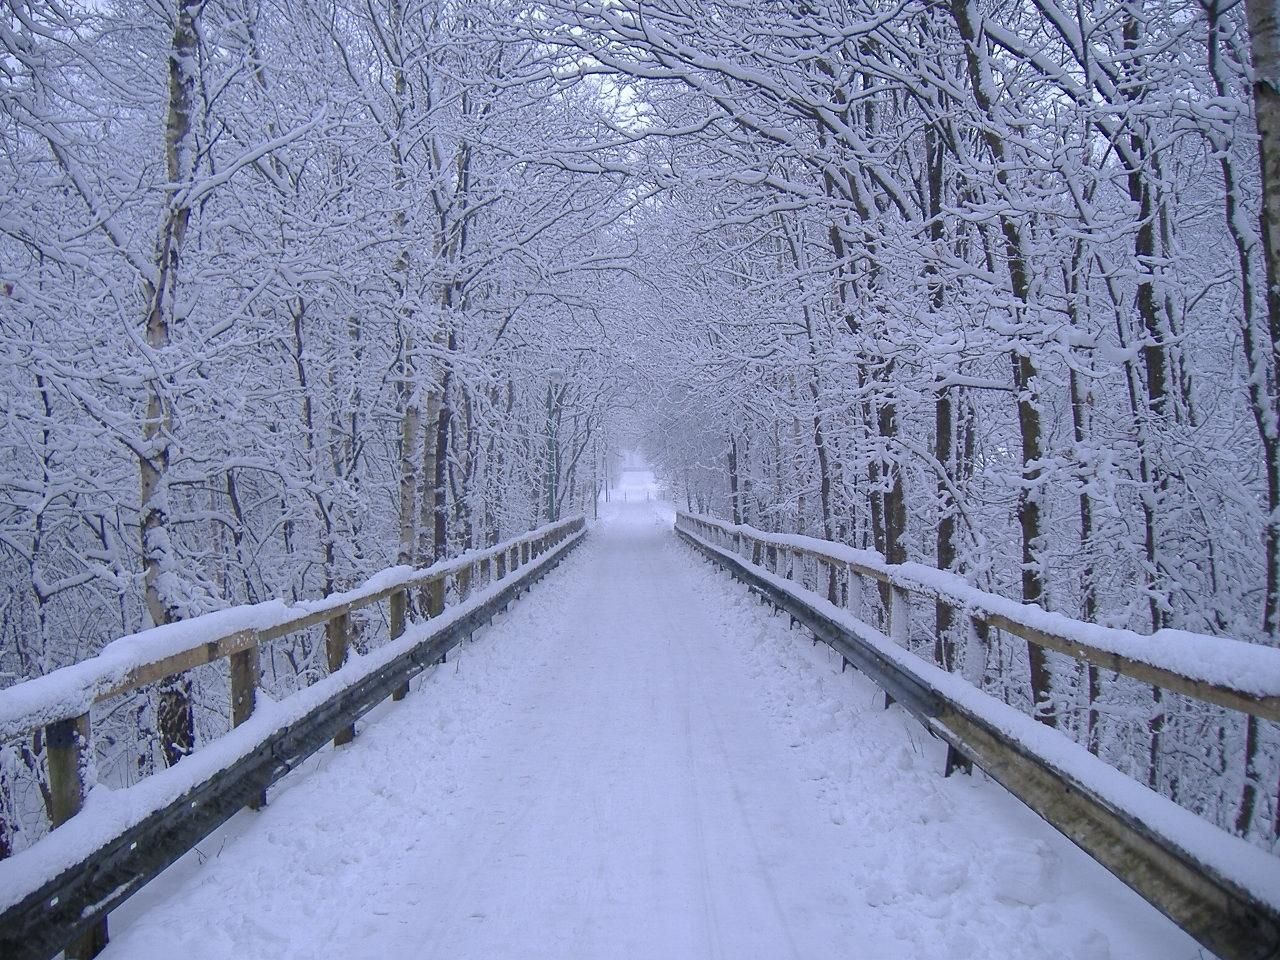 Winter Landscape Design, Photo. Winter picture, Winter scenery, Winter landscape